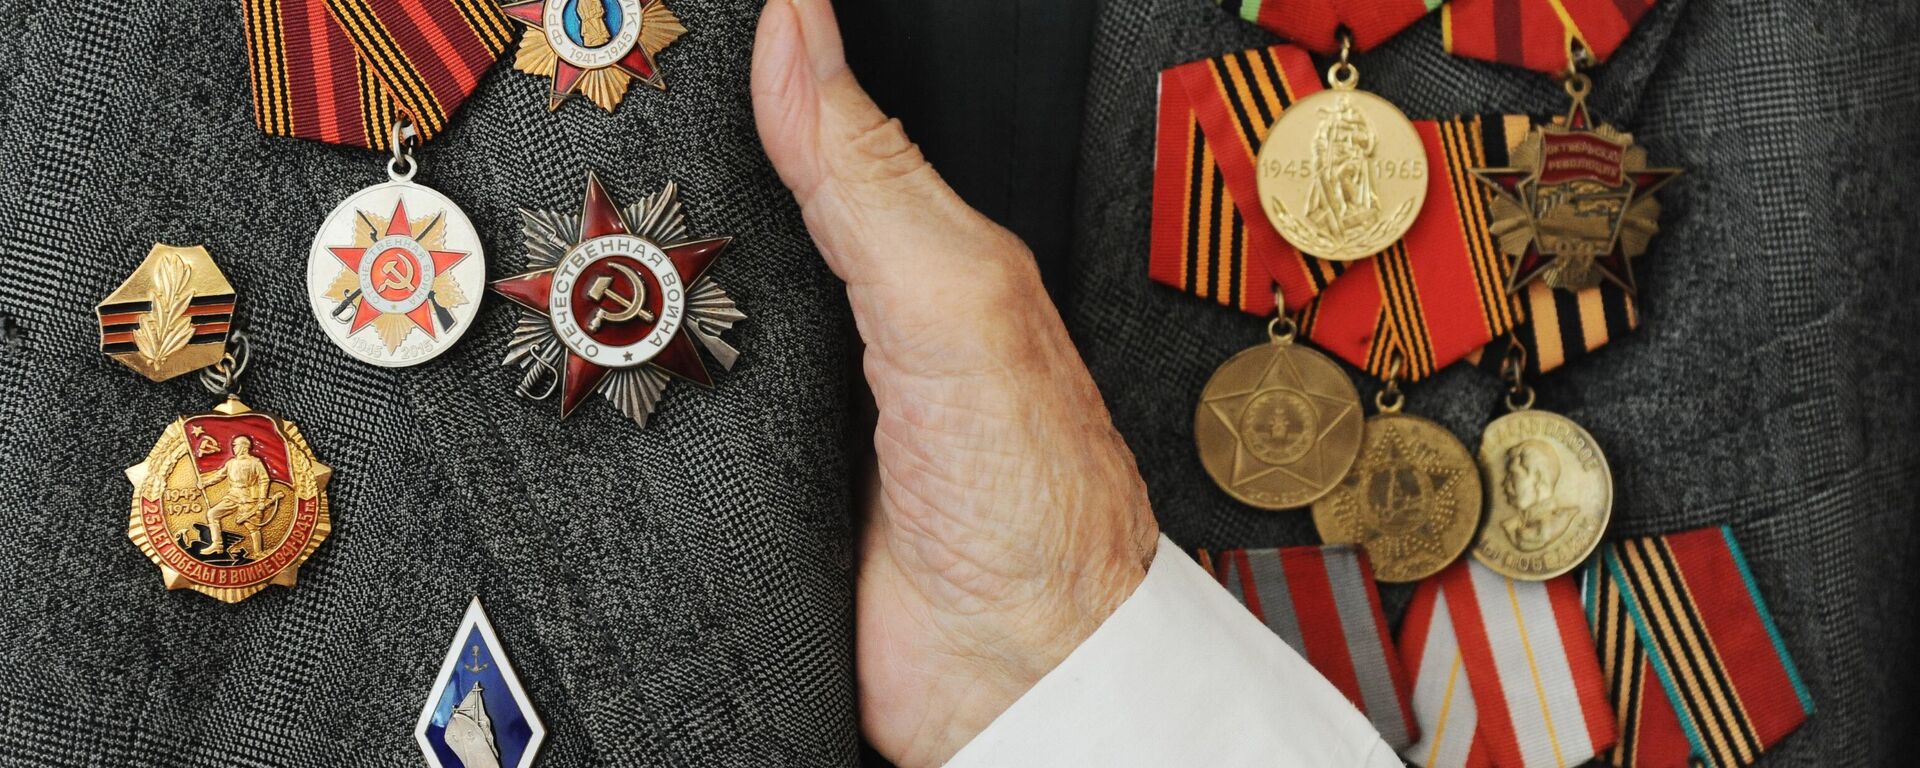 Boyevie nagradi i yubileynie medali veterana Velikoy Otechestvennoy voyni - Sputnik O‘zbekiston, 1920, 21.04.2021